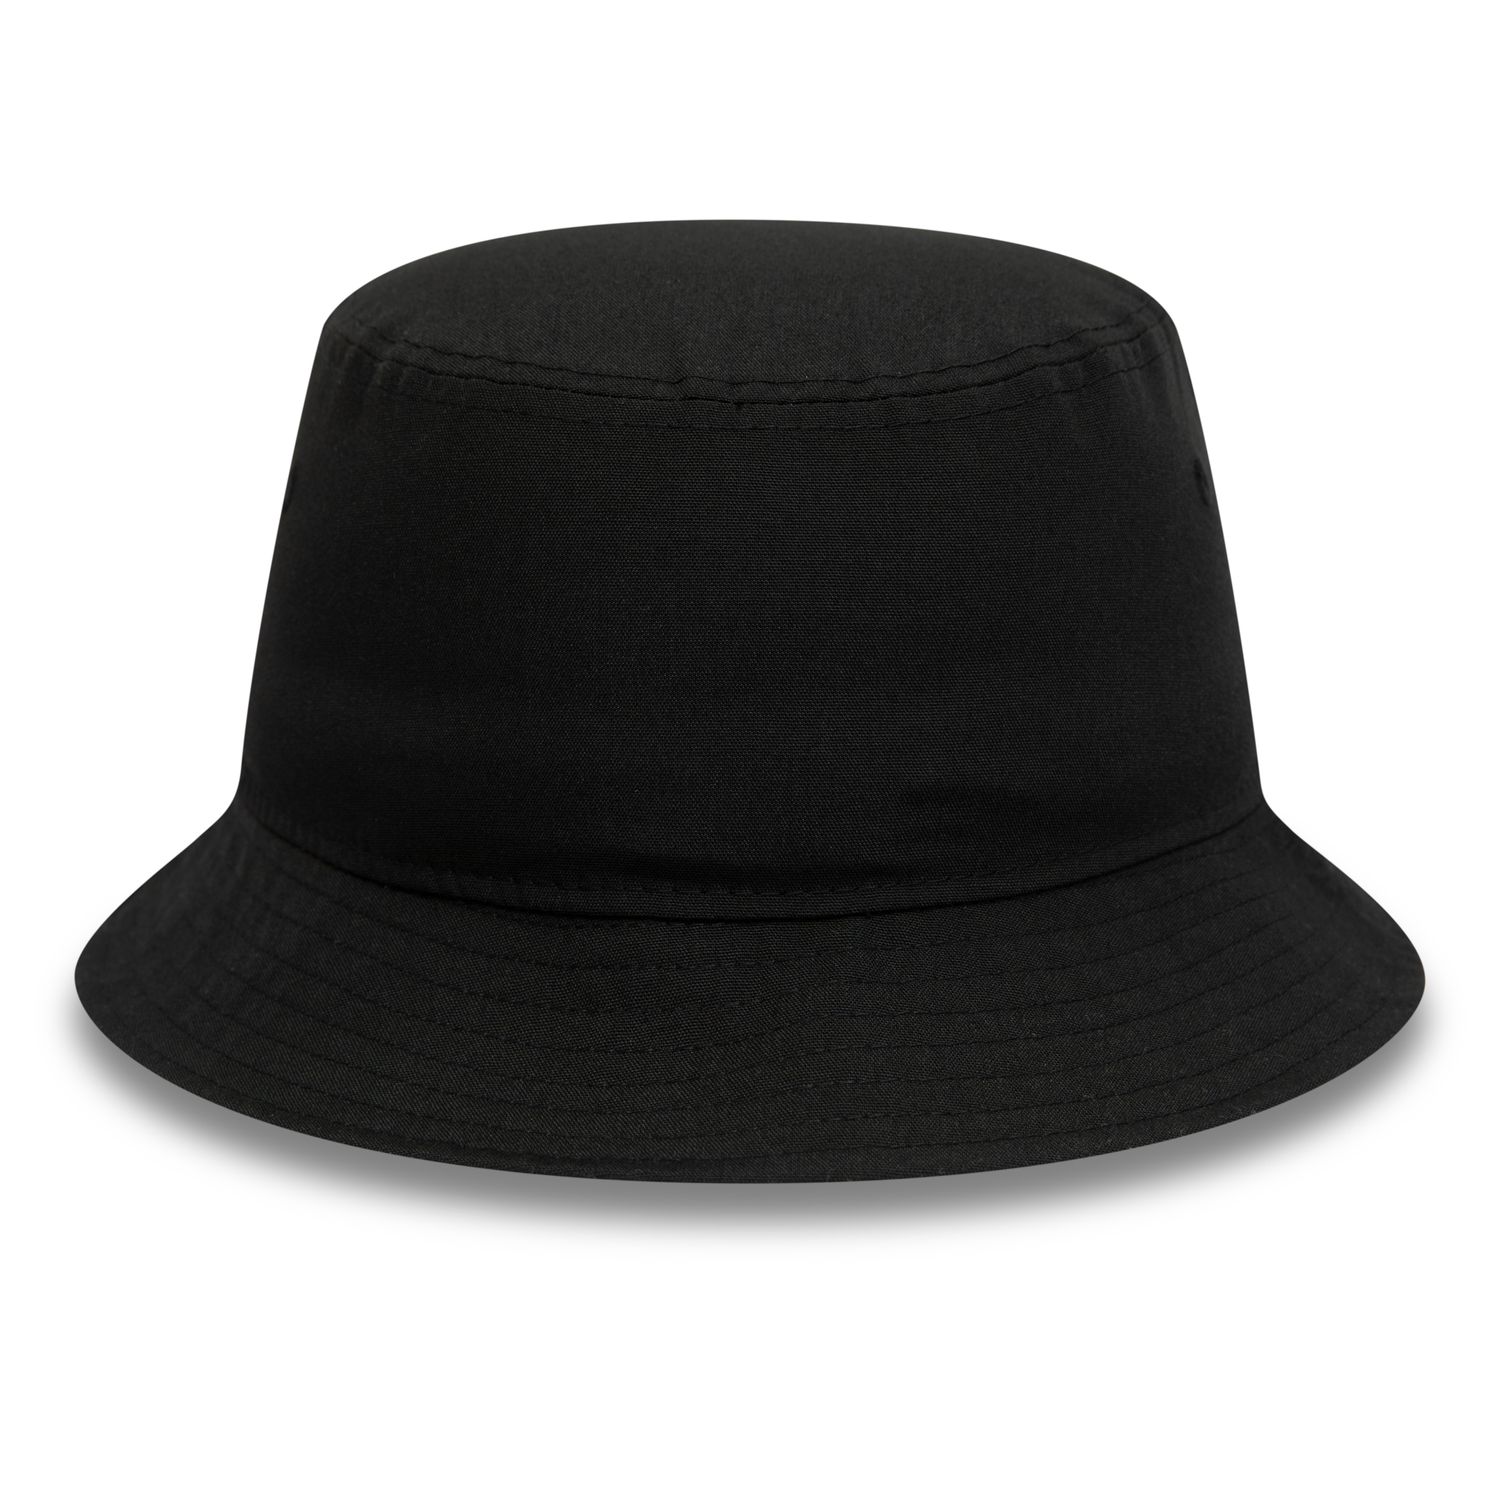 New Era Brooklyn Nets Print Infill Bucket Hat